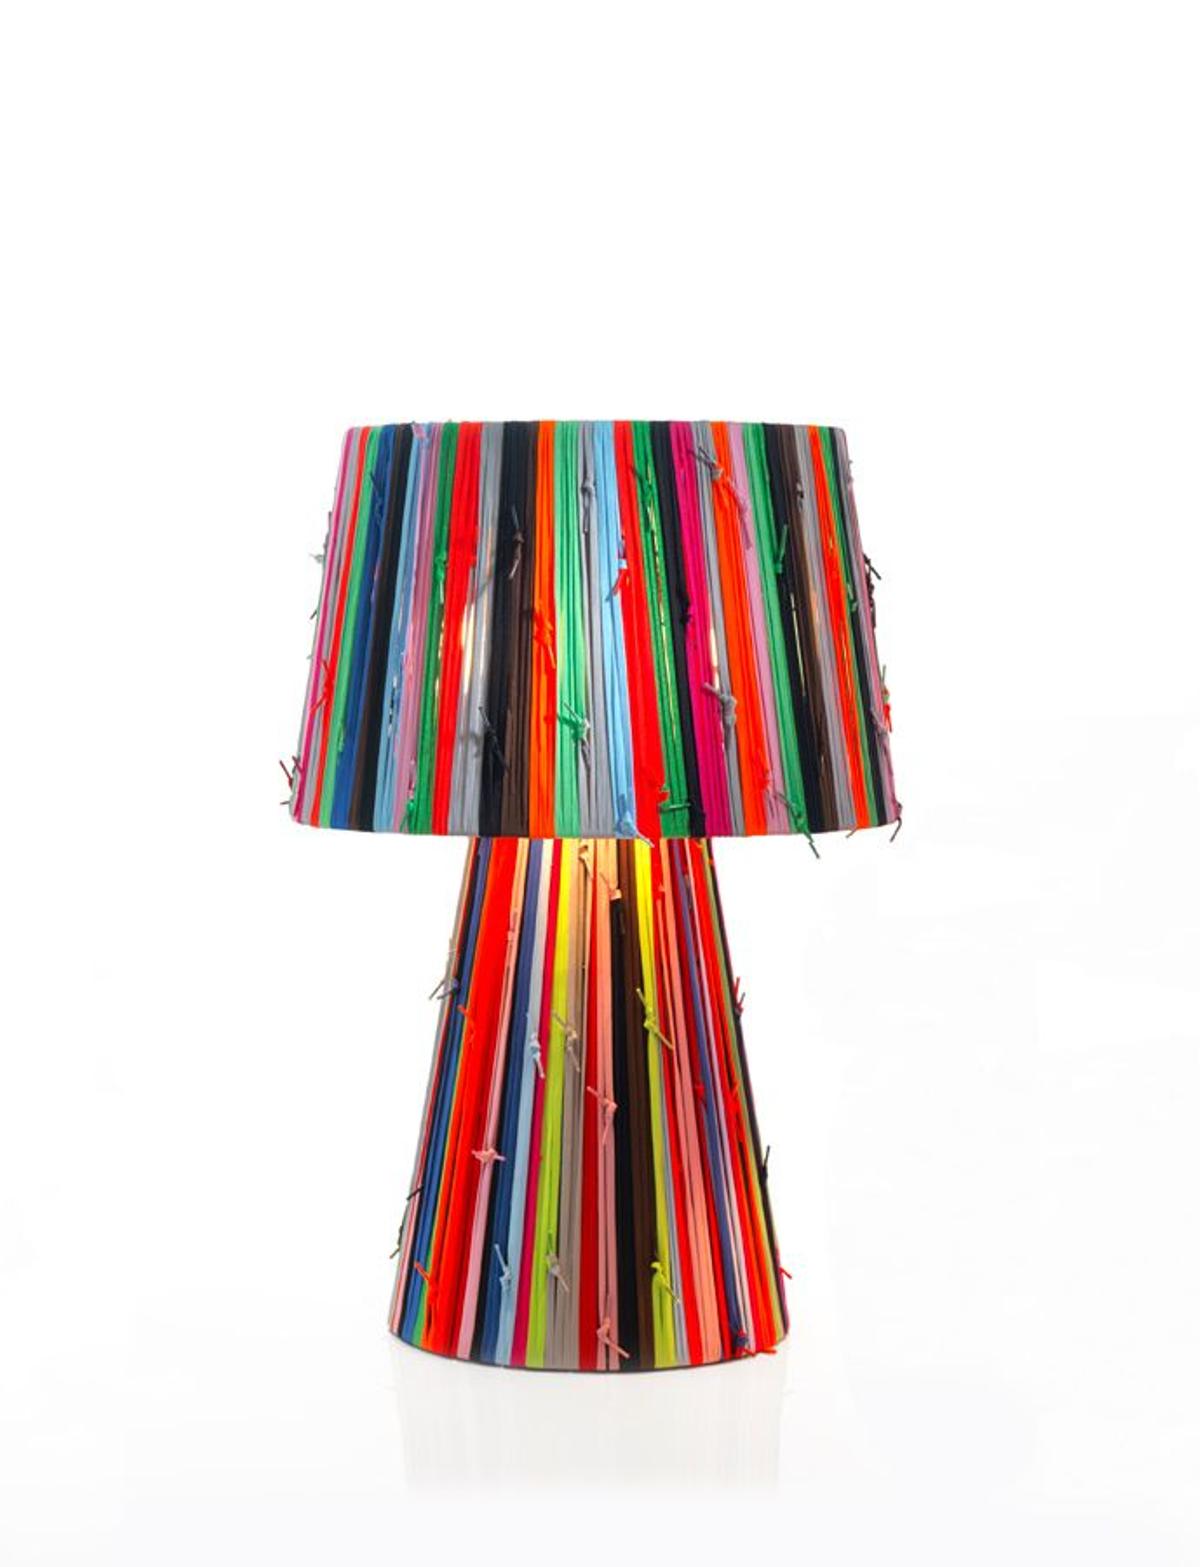 Lámpara shoelaces table-GR-multicolour (350€+IVA)